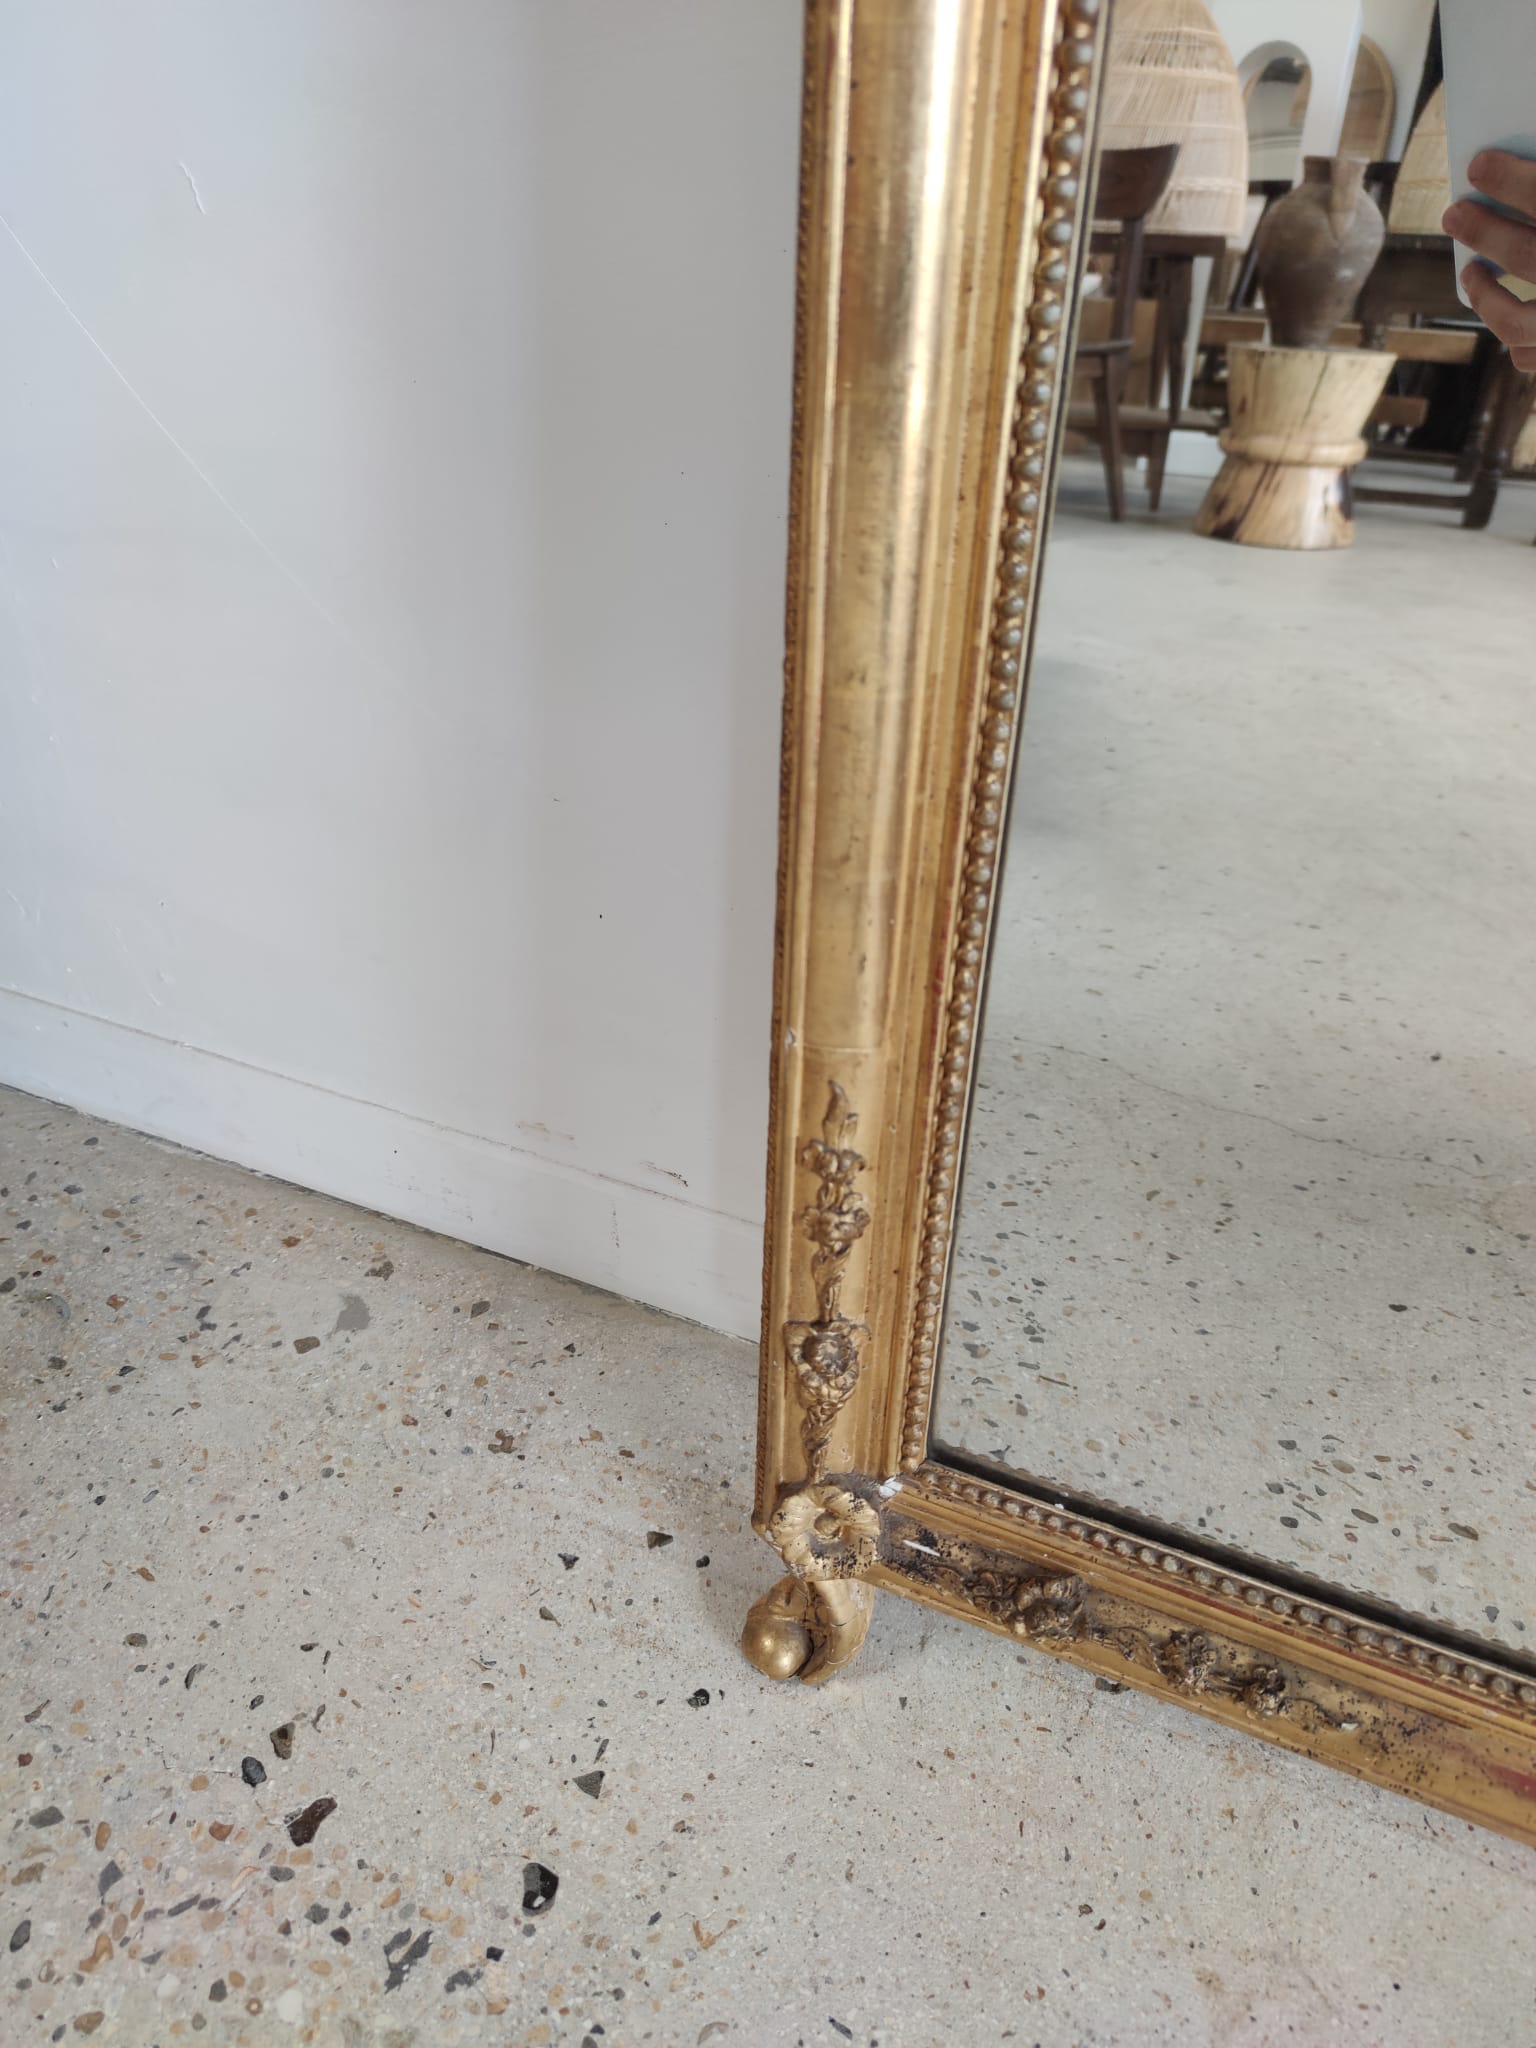 Miroir doré arrondi au décor floral en ronde bosse